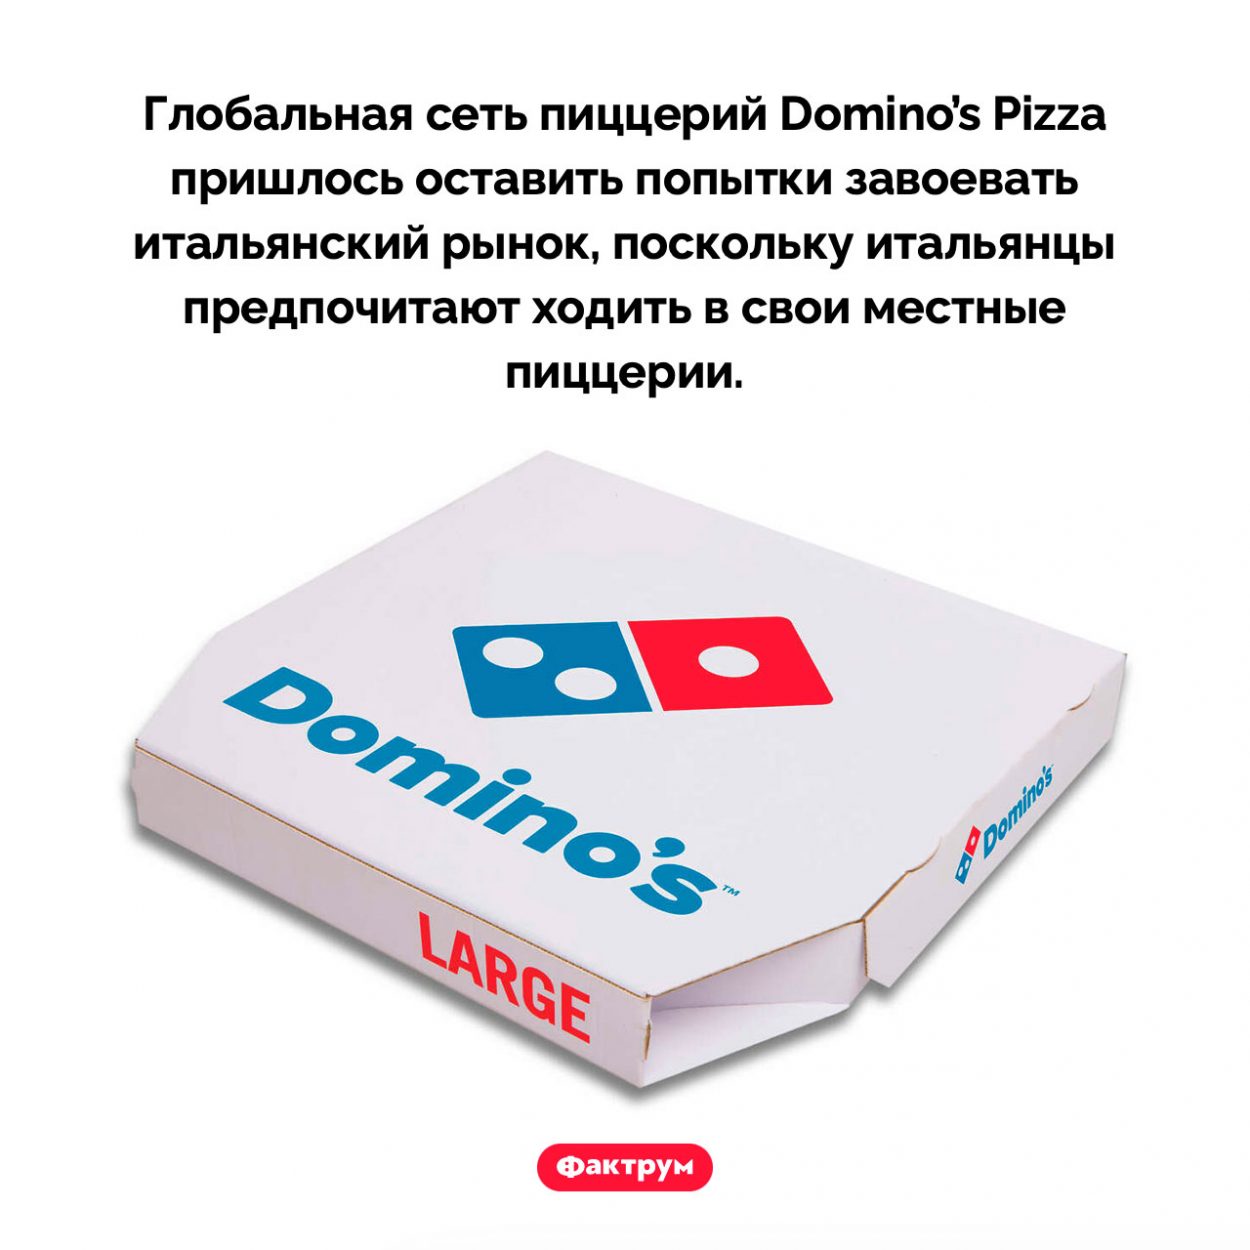 Провал Domino’s Pizza в Италии. Глобальная сеть пиццерий Domino’s Pizza пришлось оставить попытки завоевать итальянский рынок, поскольку итальянцы предпочитают ходить в свои местные пиццерии.